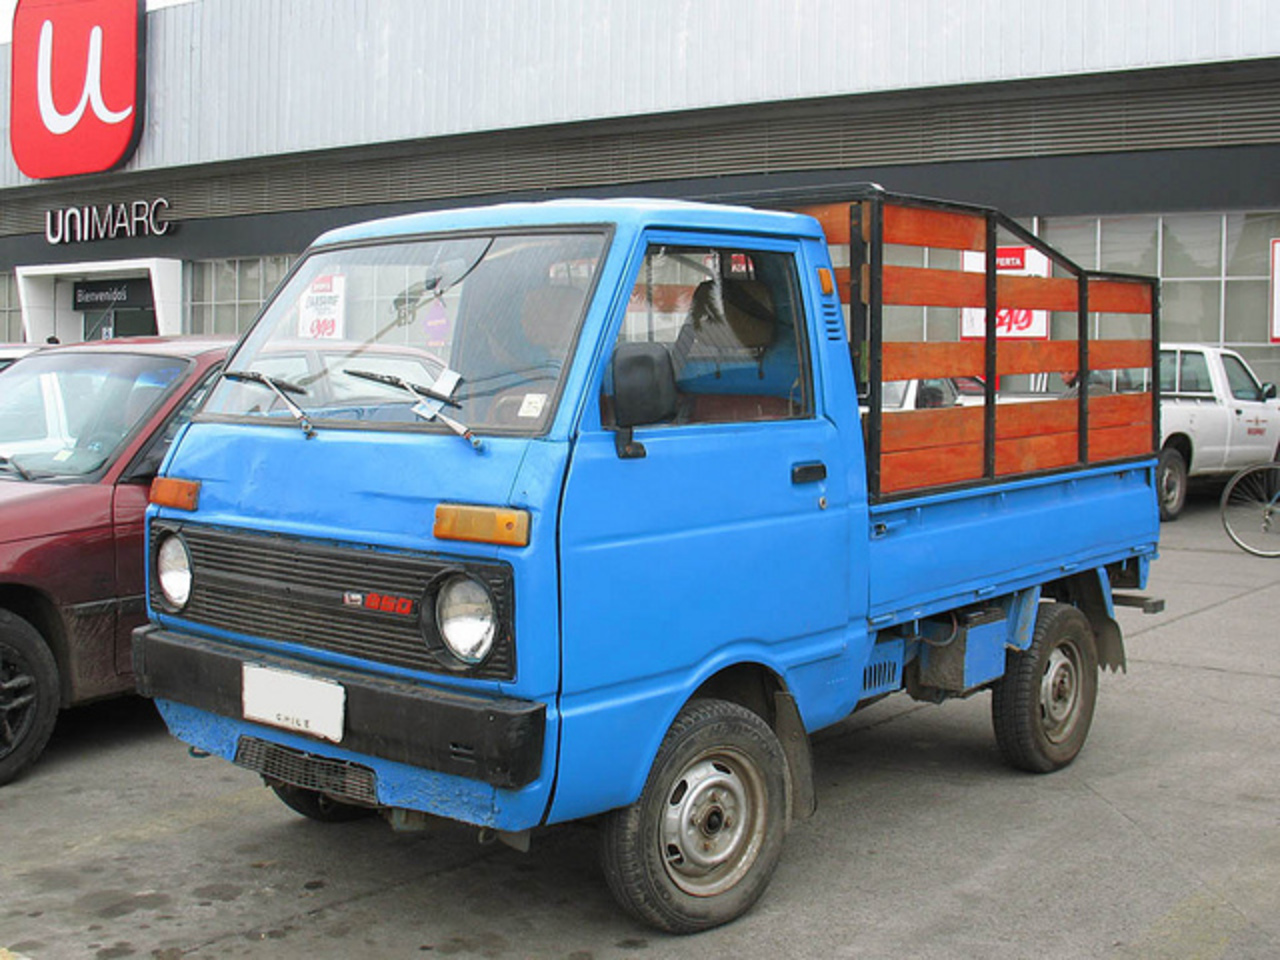 Daihatsu 850 Cab